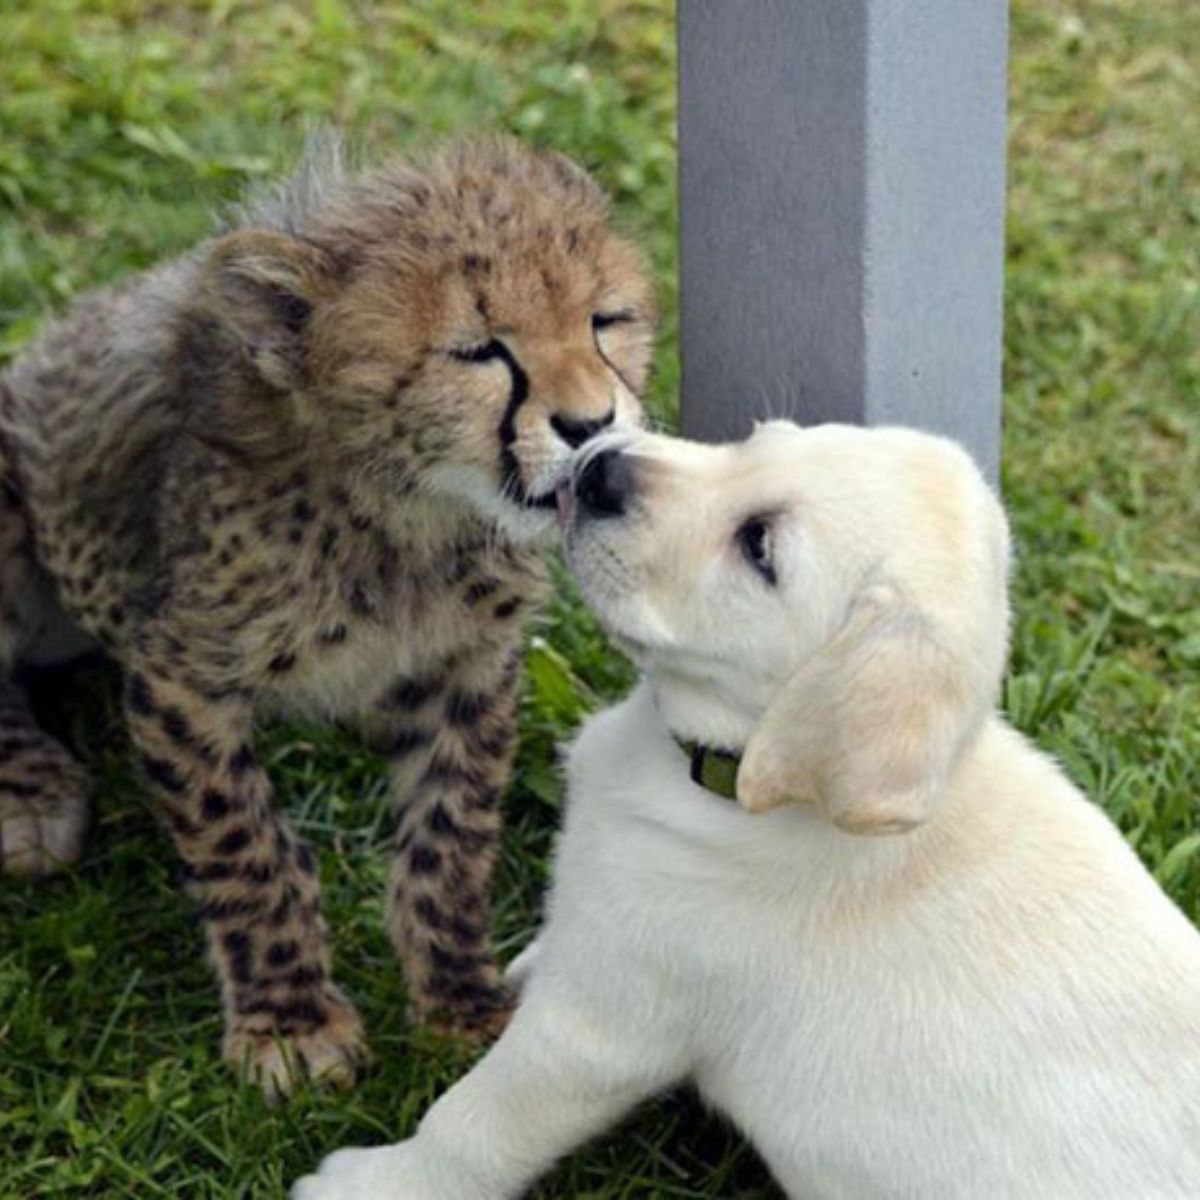 cheetah and dog kissing